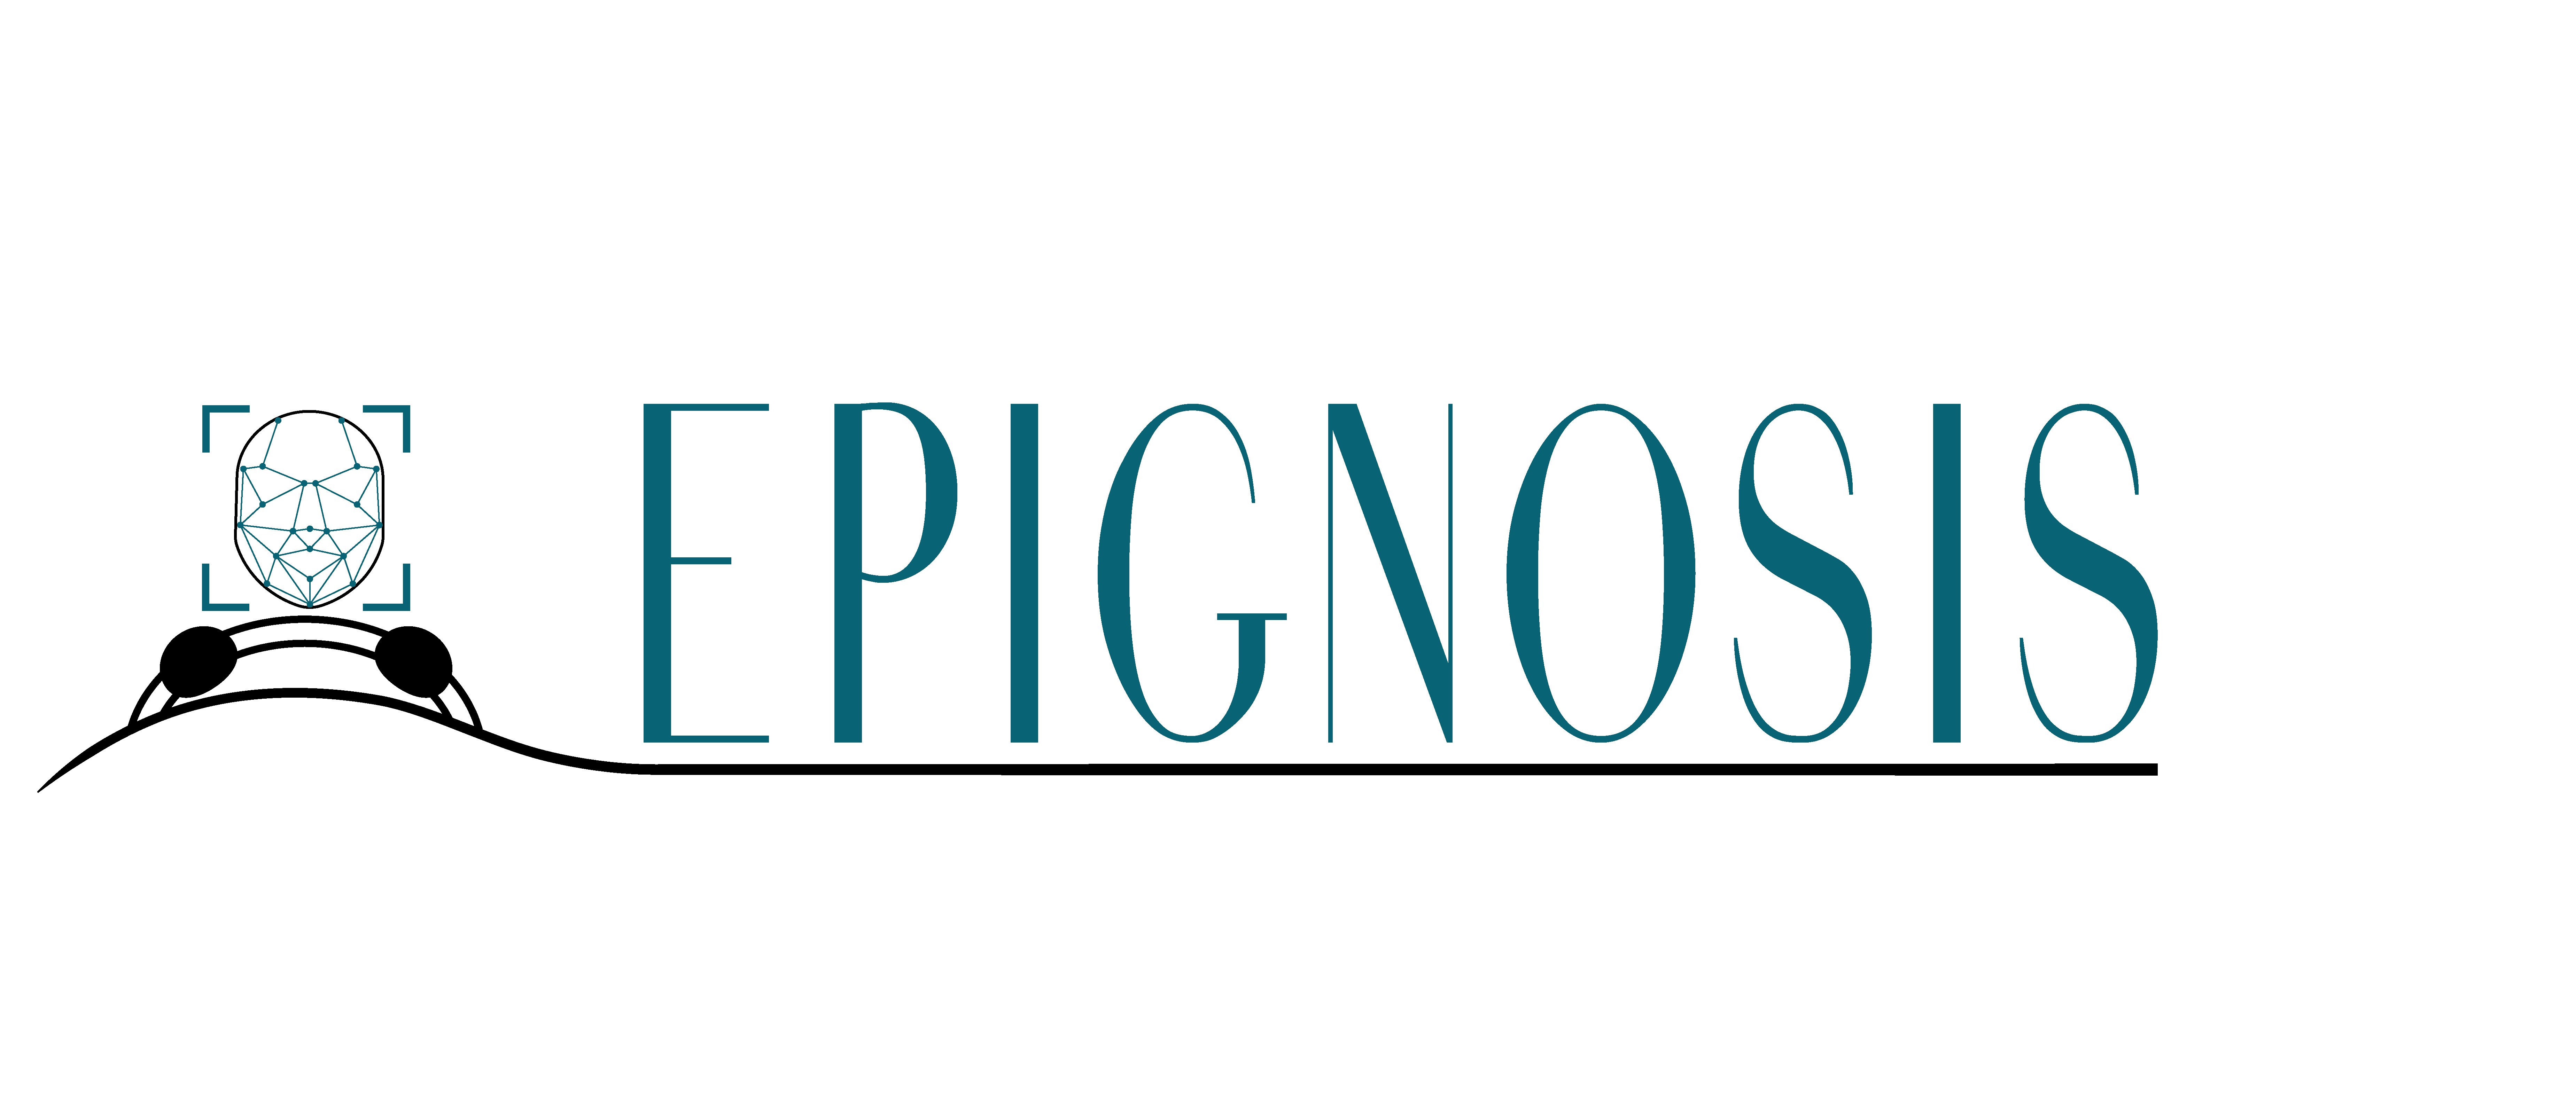 EPIGNOSIS Logo  